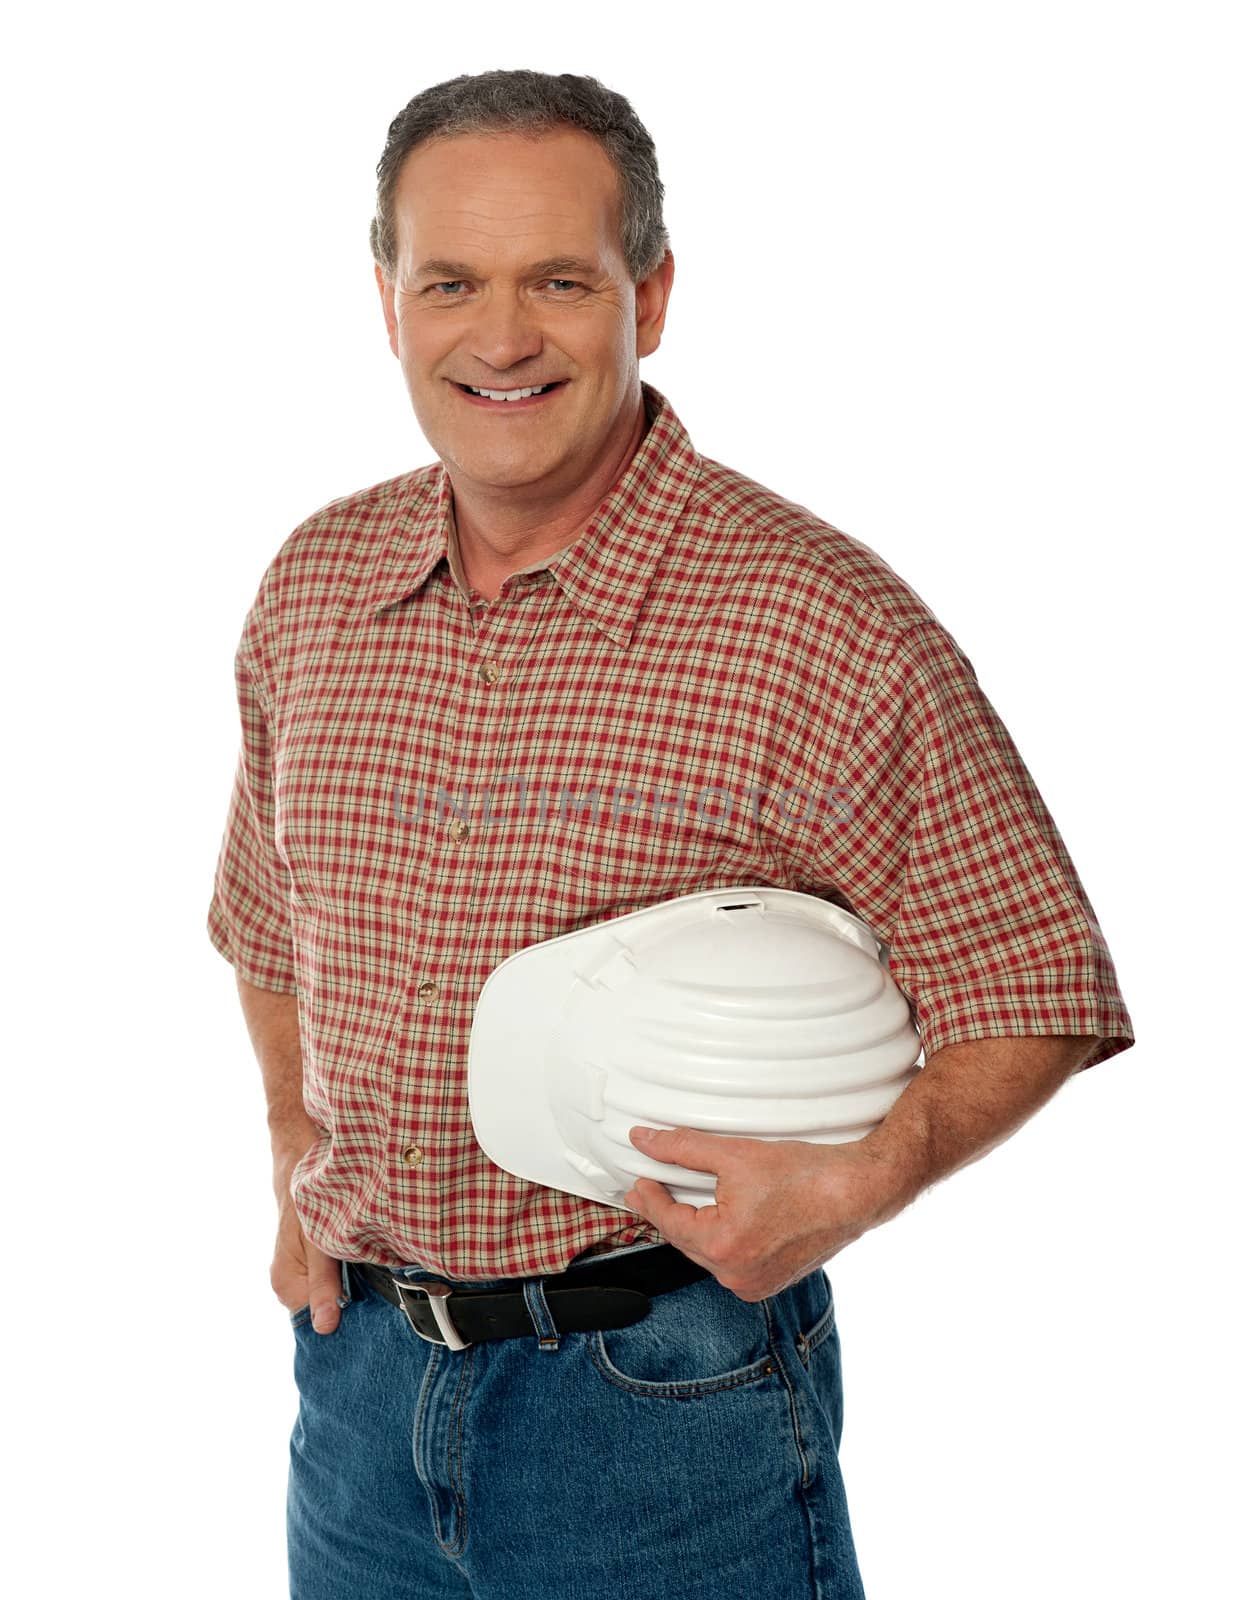 Smiling senior architect holding white safety hat posing casually